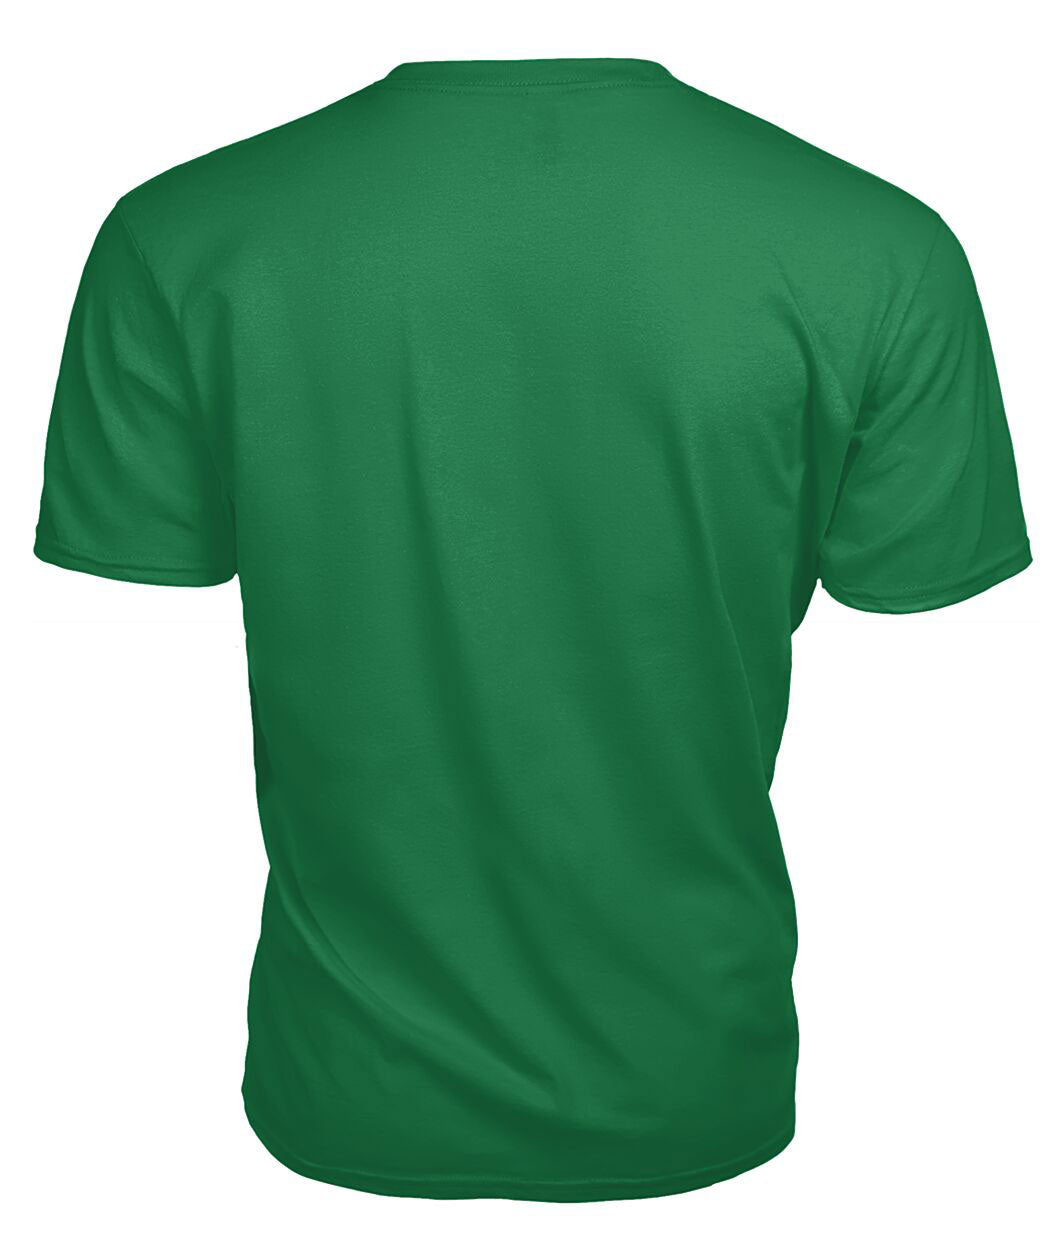 Rutherford Tartan Crest 2D T-shirt - Blood Runs Through My Veins Style